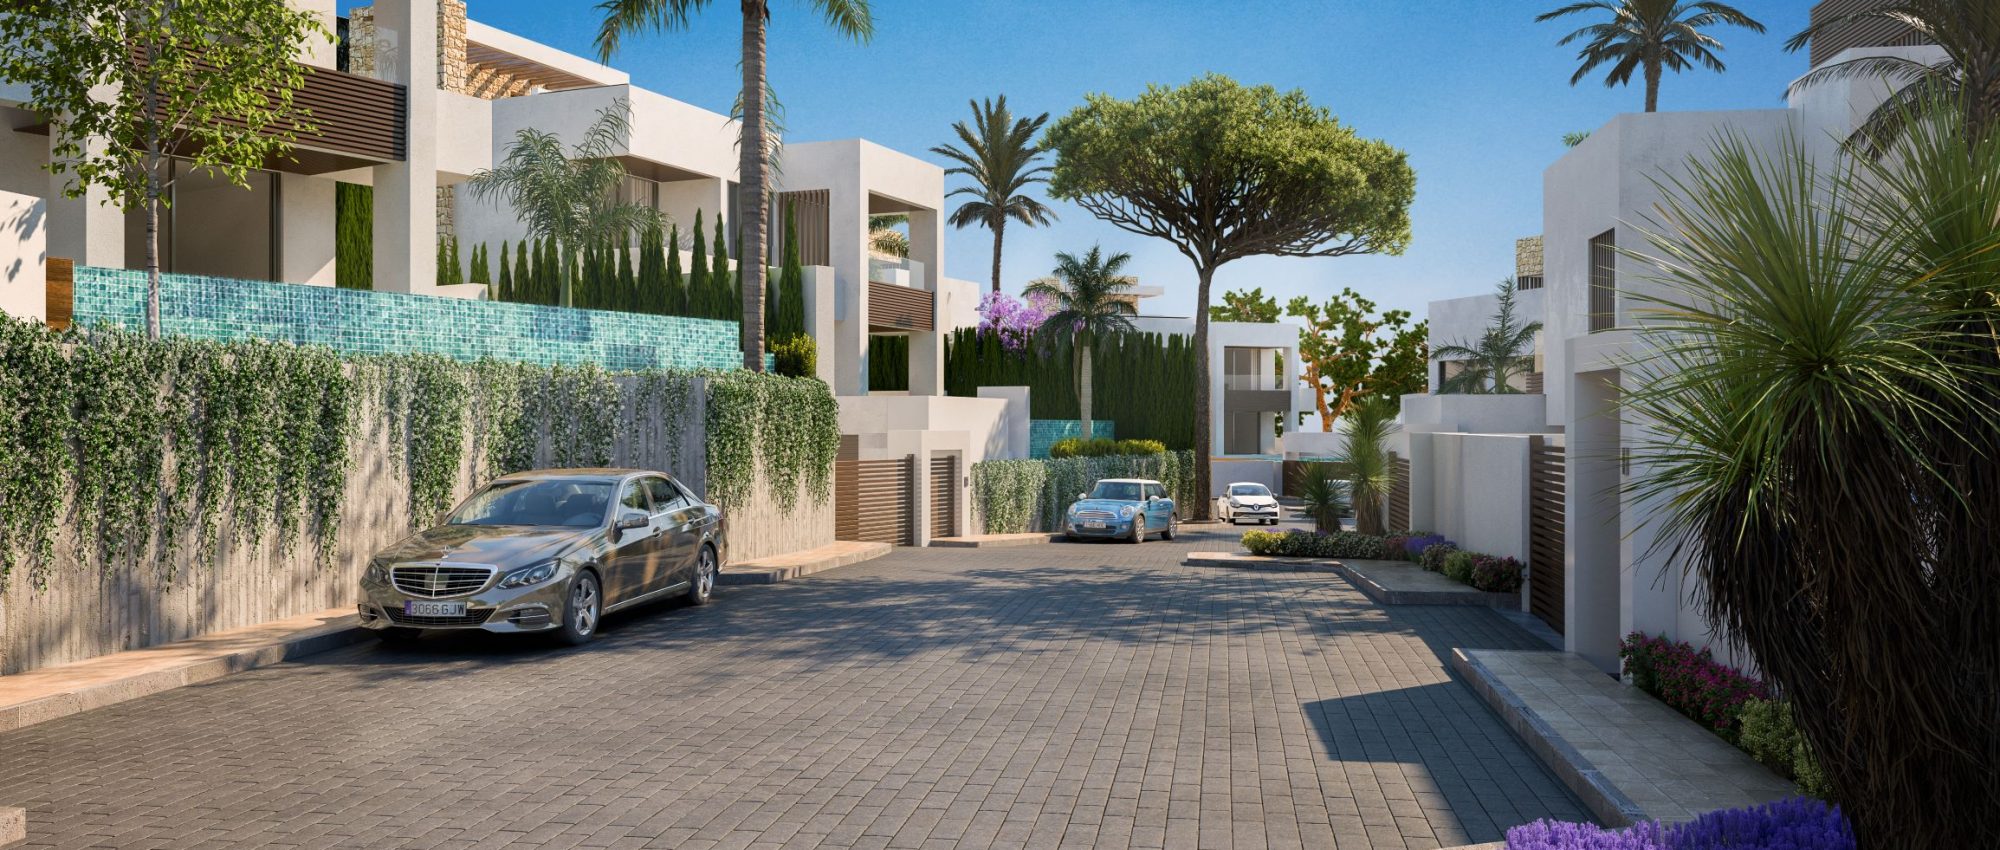 Luxury villas in the heart of Marbella